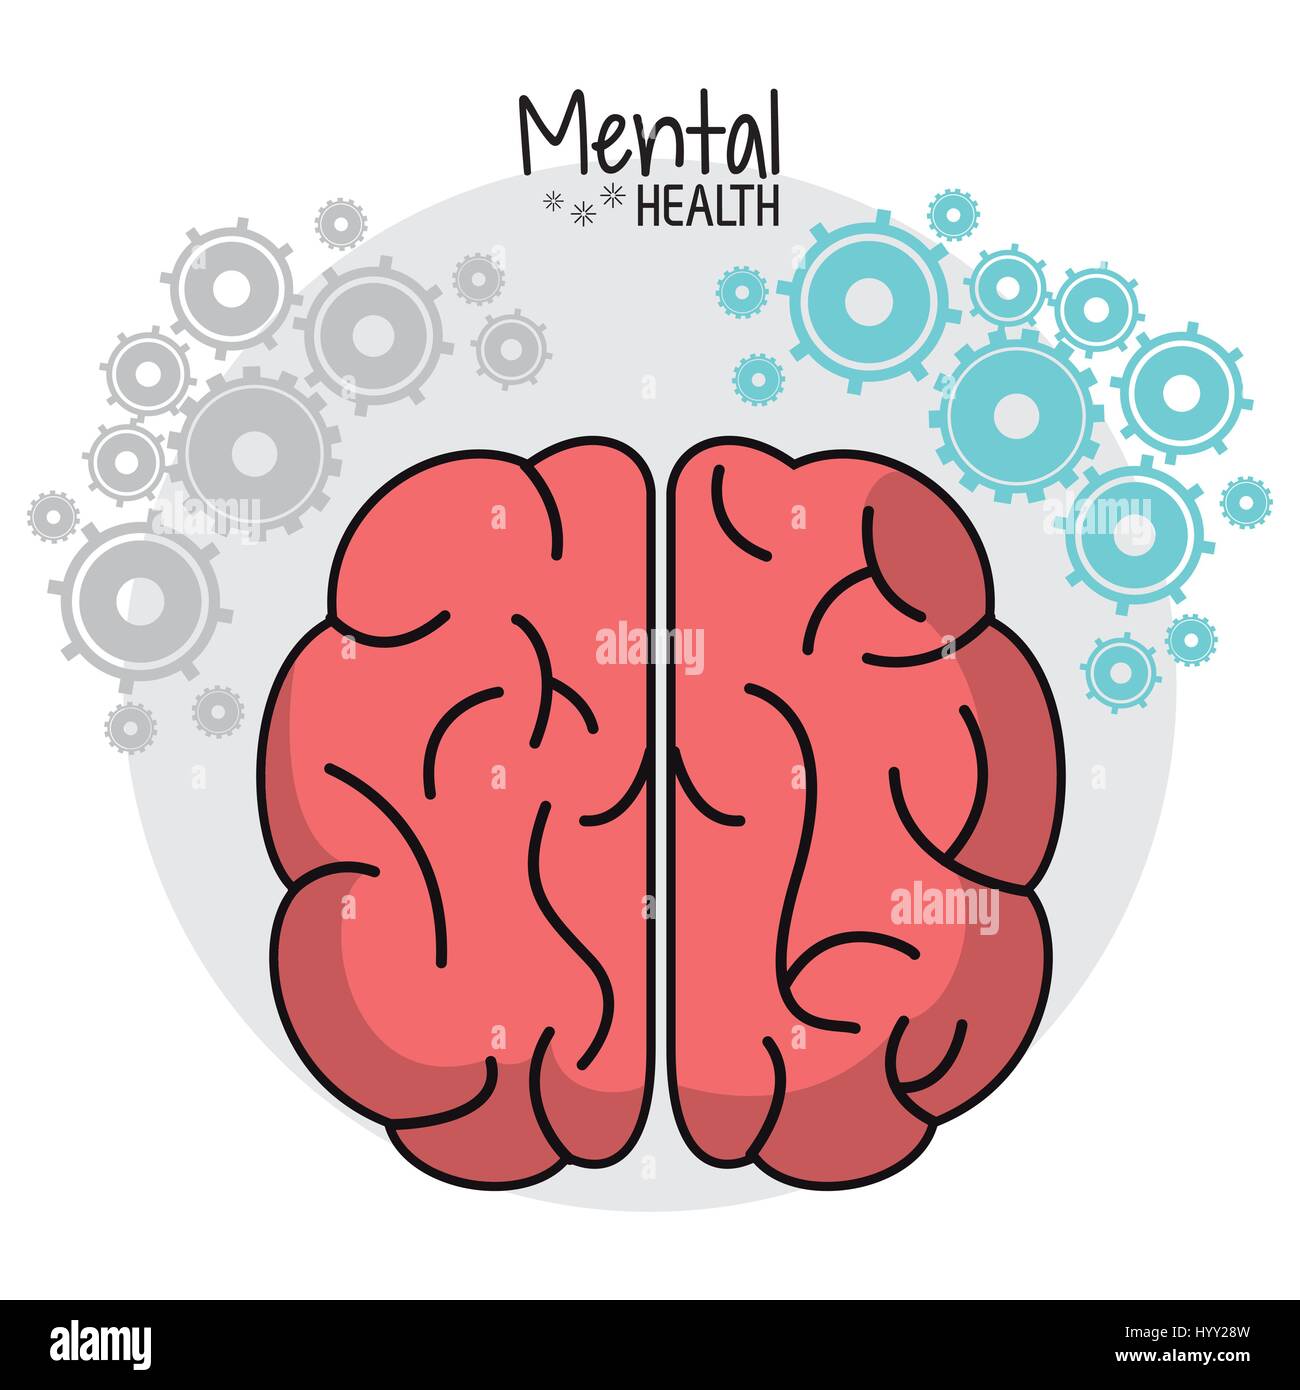 Il cervello umano salute mentale immagine degli ingranaggi Illustrazione Vettoriale